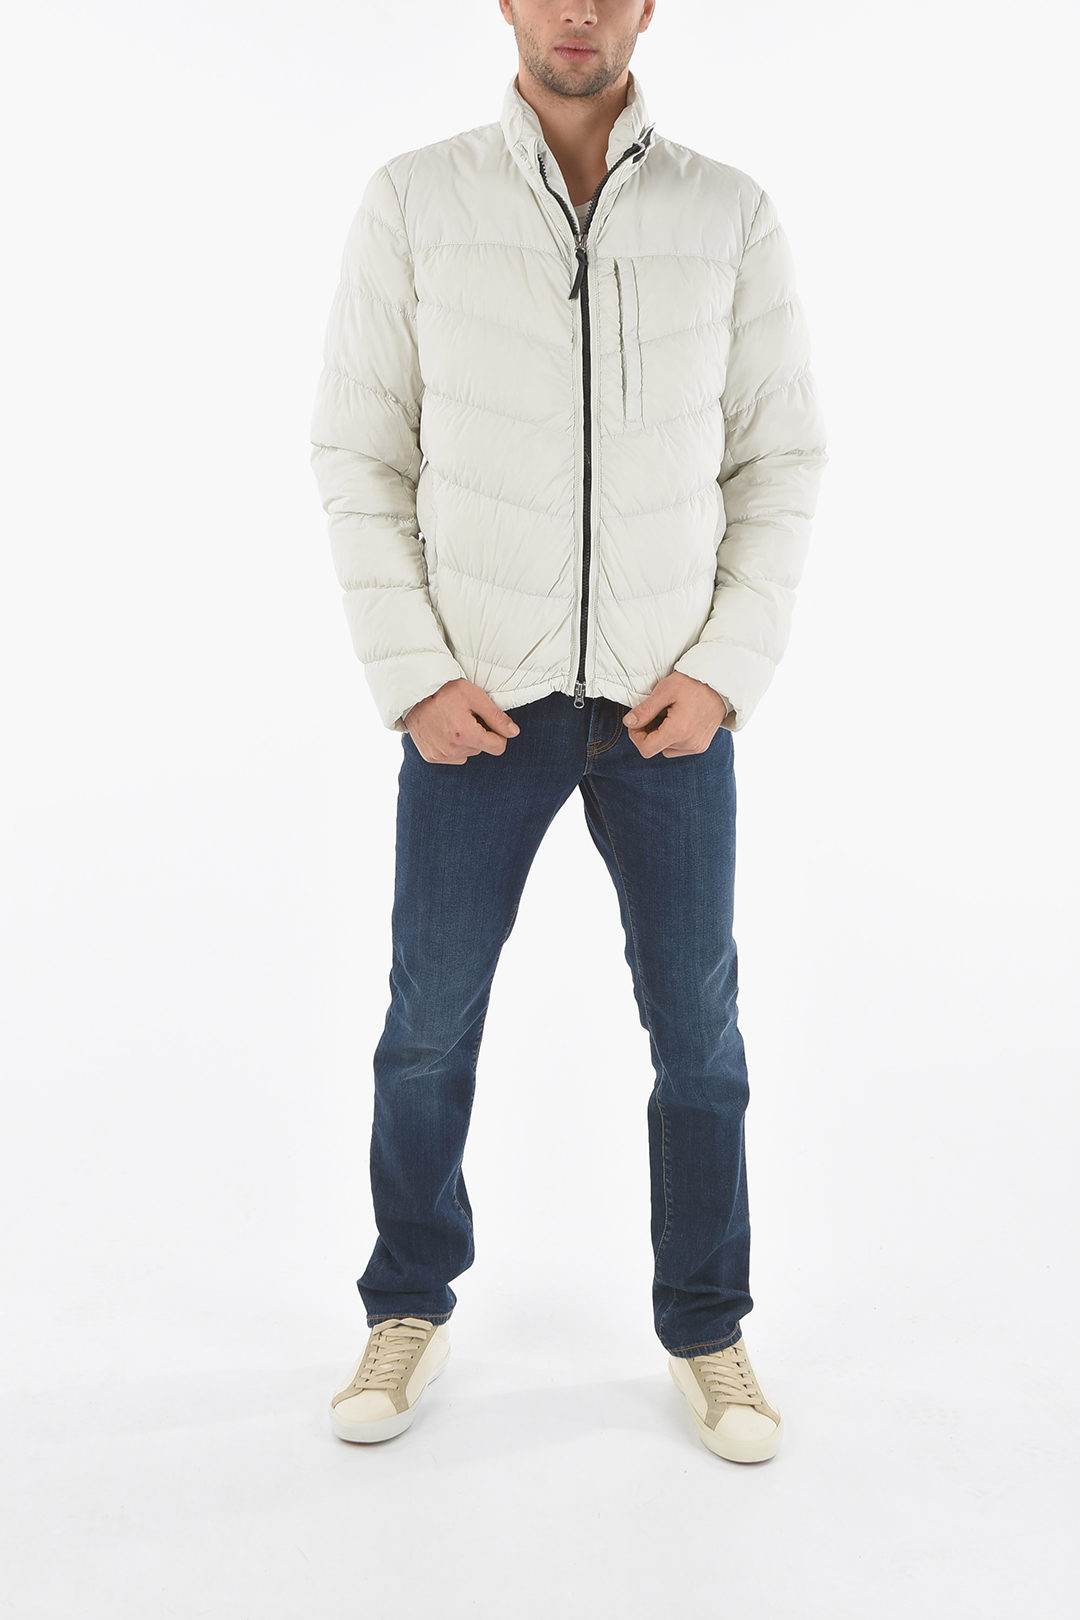 Hilarisch Doe het niet Verplaatsbaar Woolrich 3 Pockets SUNDANCE Down Jacket with Contrasting Zip men - Glamood  Outlet